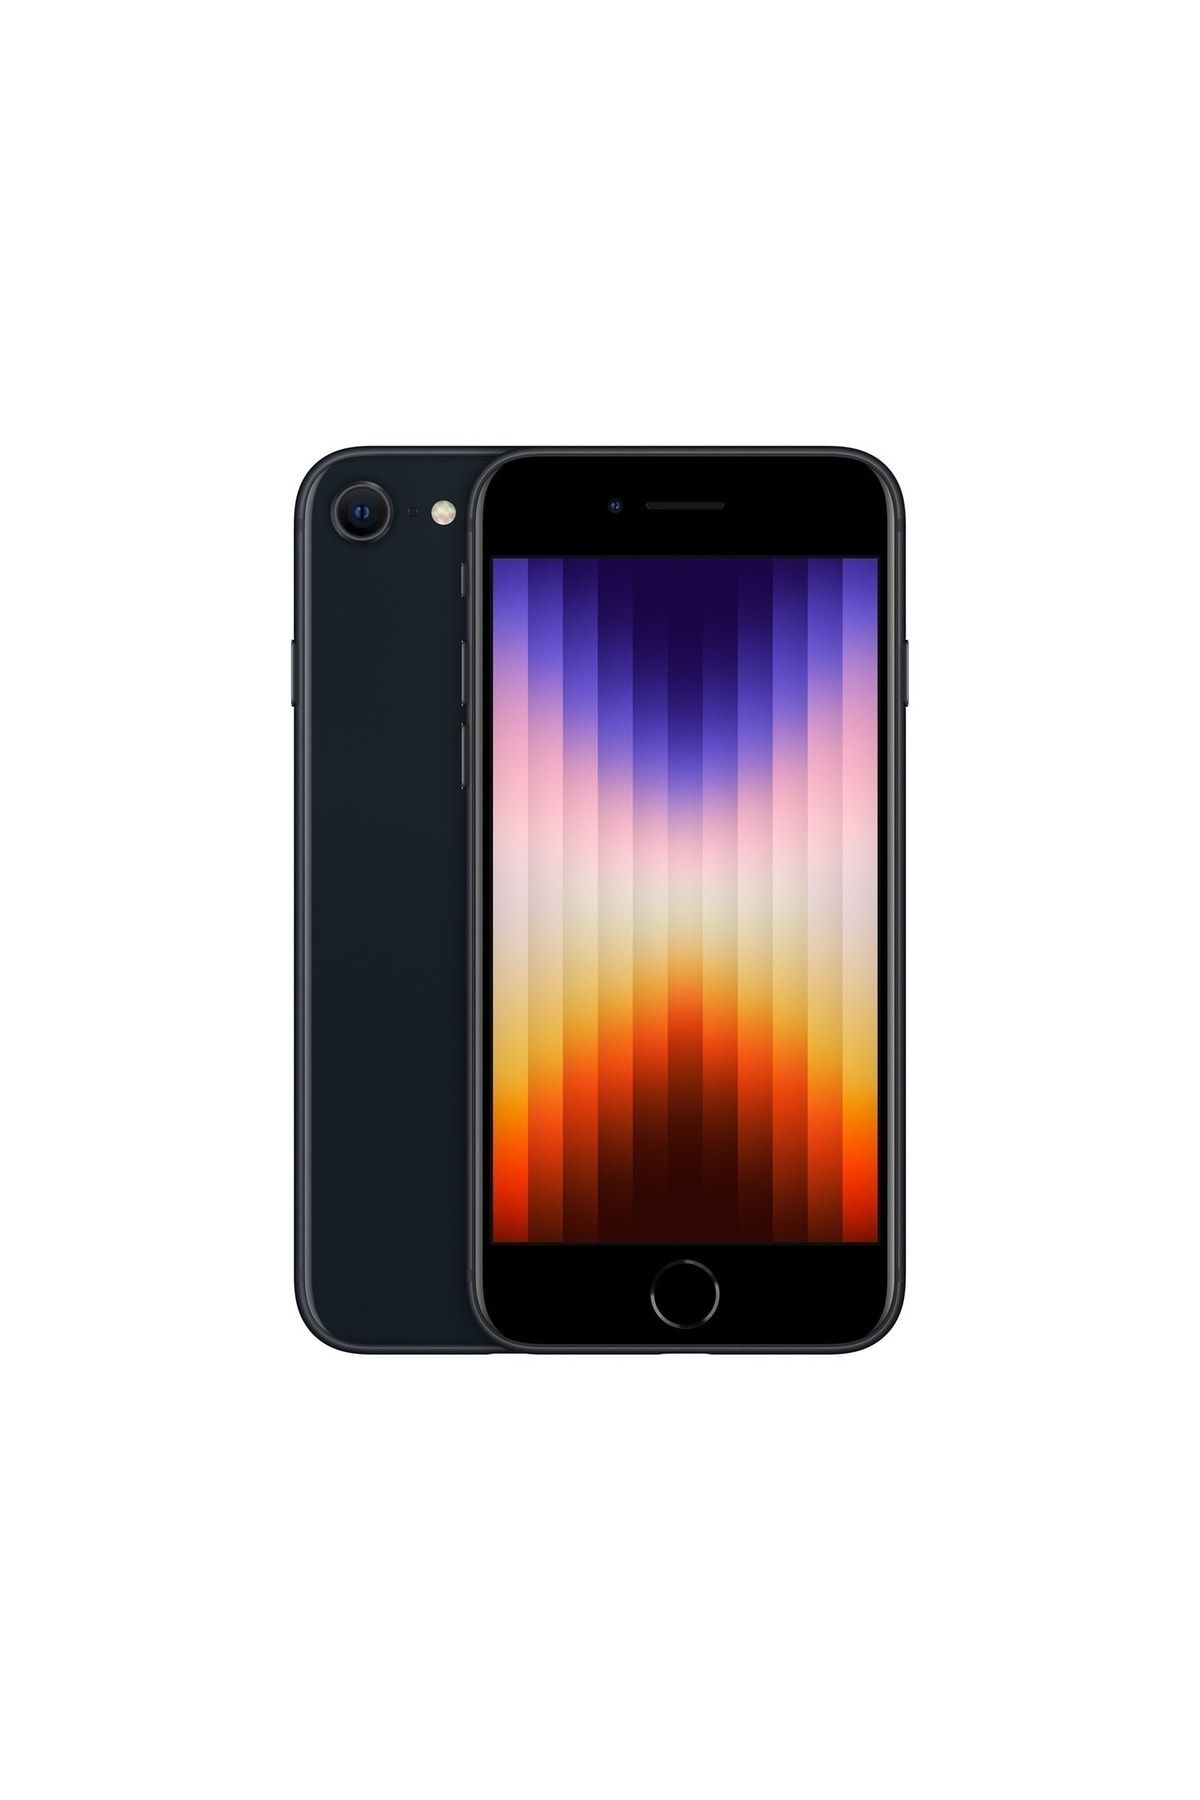 Apple iPhone SE 2022 64 GB Siyah Cep Telefonu (Apple Türkiye Garantili)